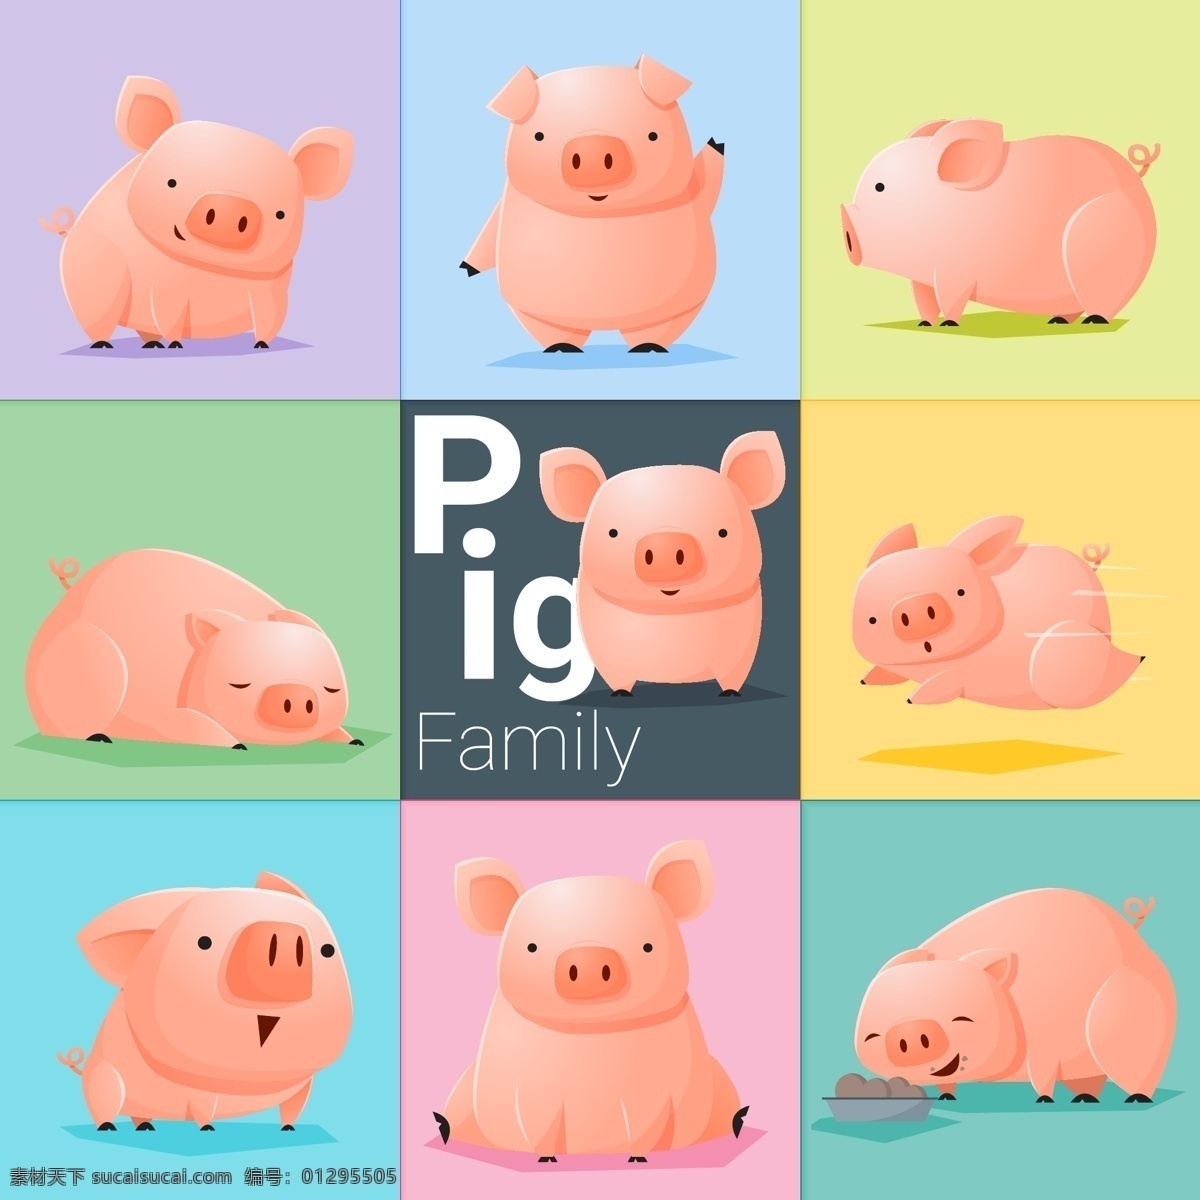 粉色 卡通 猪 动物 矢量图 矢量 高清图片